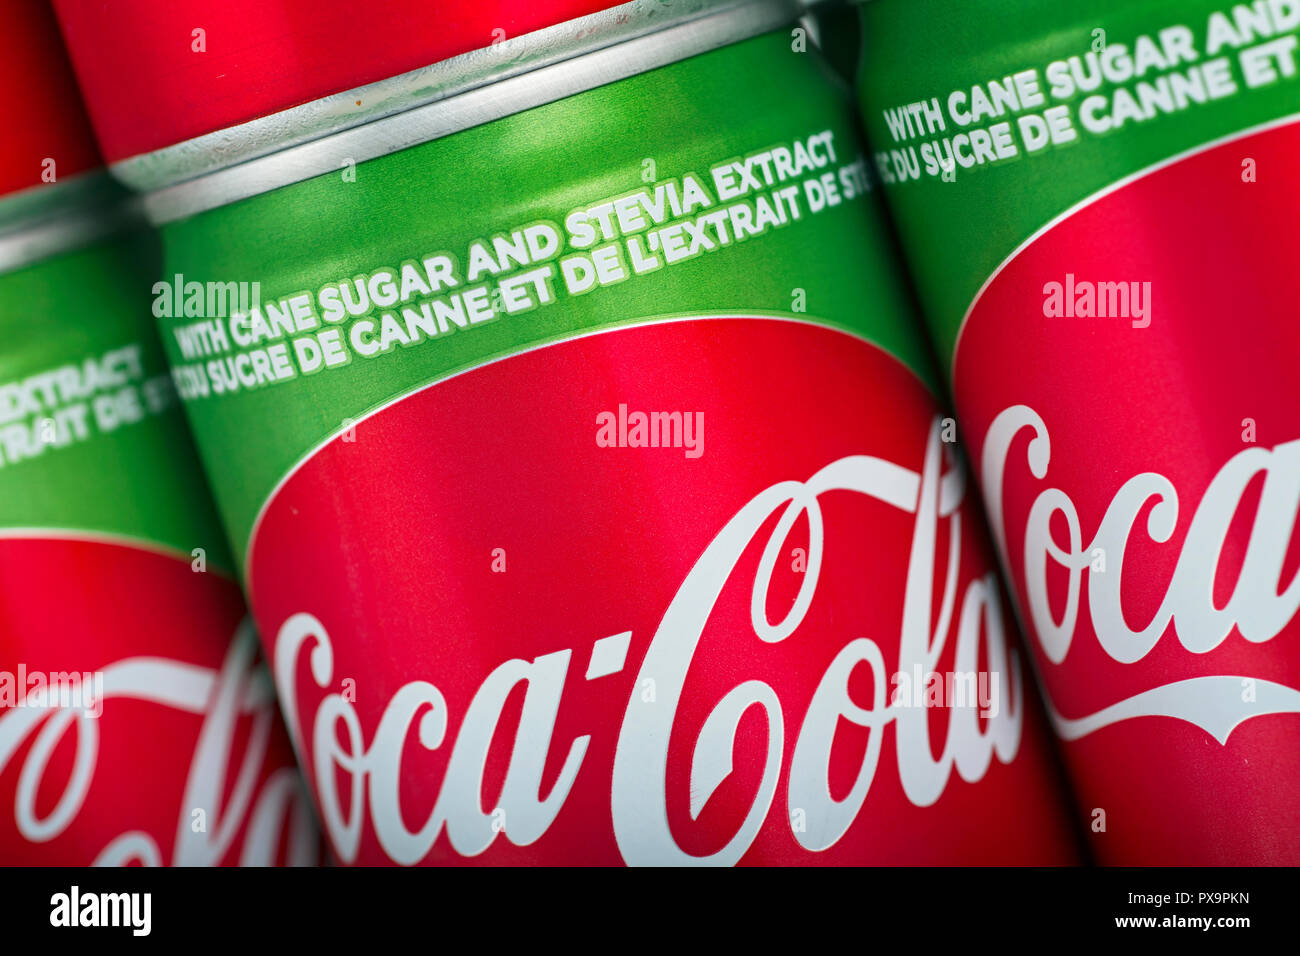 Stevia et sucre de canne Banque de photographies et d'images à haute  résolution - Alamy